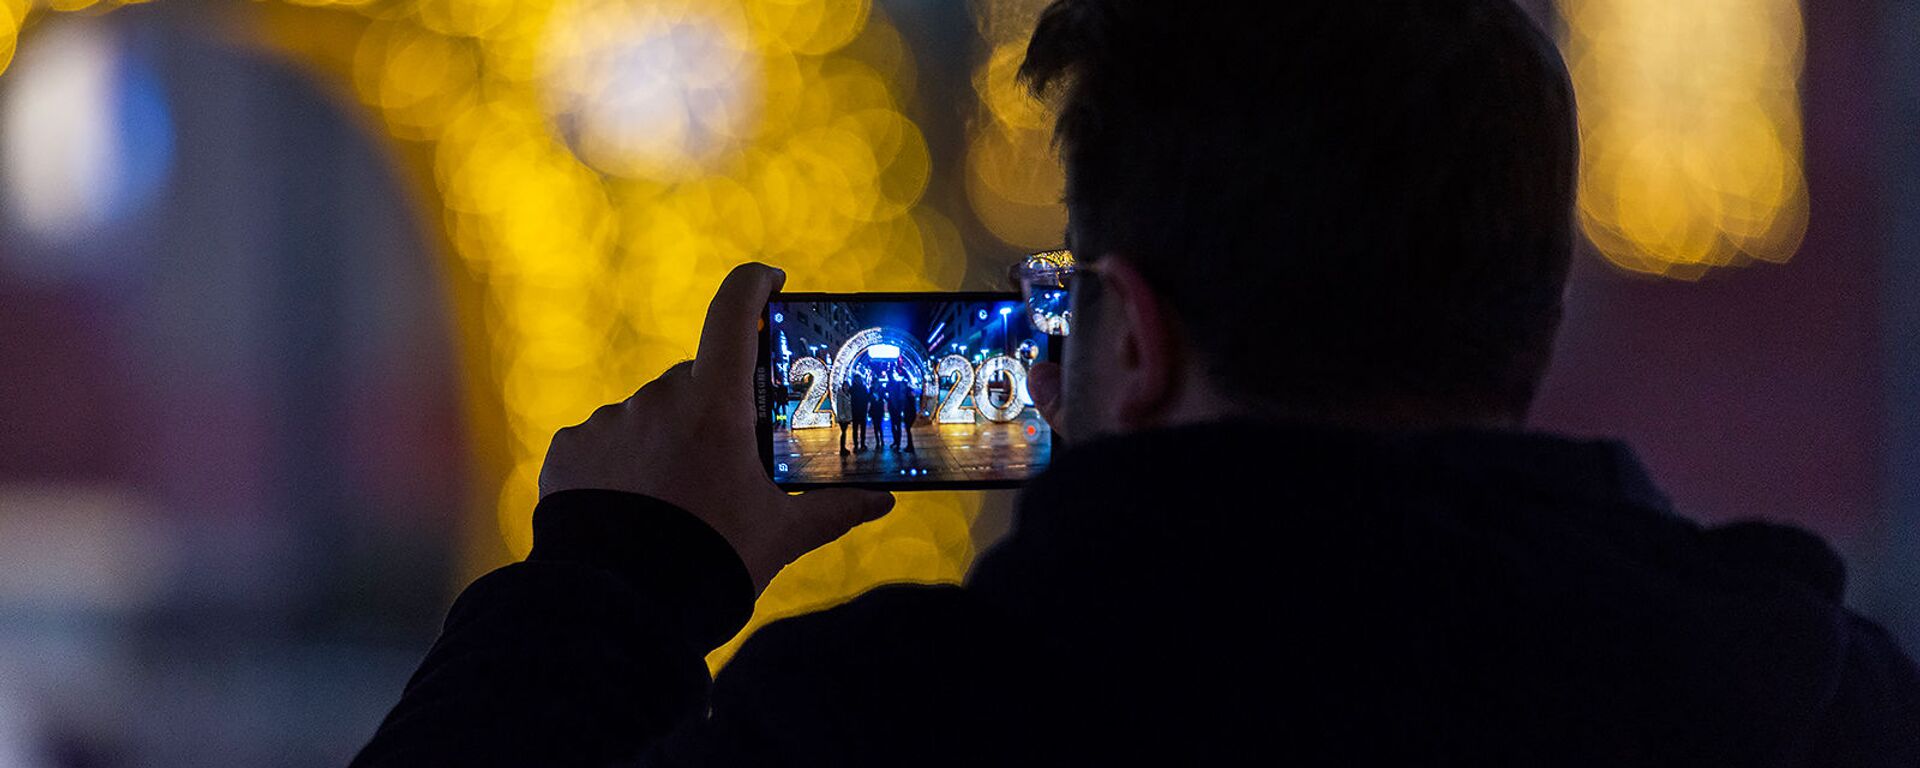 Турист фотографруют знакомых  у новогодней иллюминации на Северном проспекте - Sputnik Արմենիա, 1920, 15.04.2021